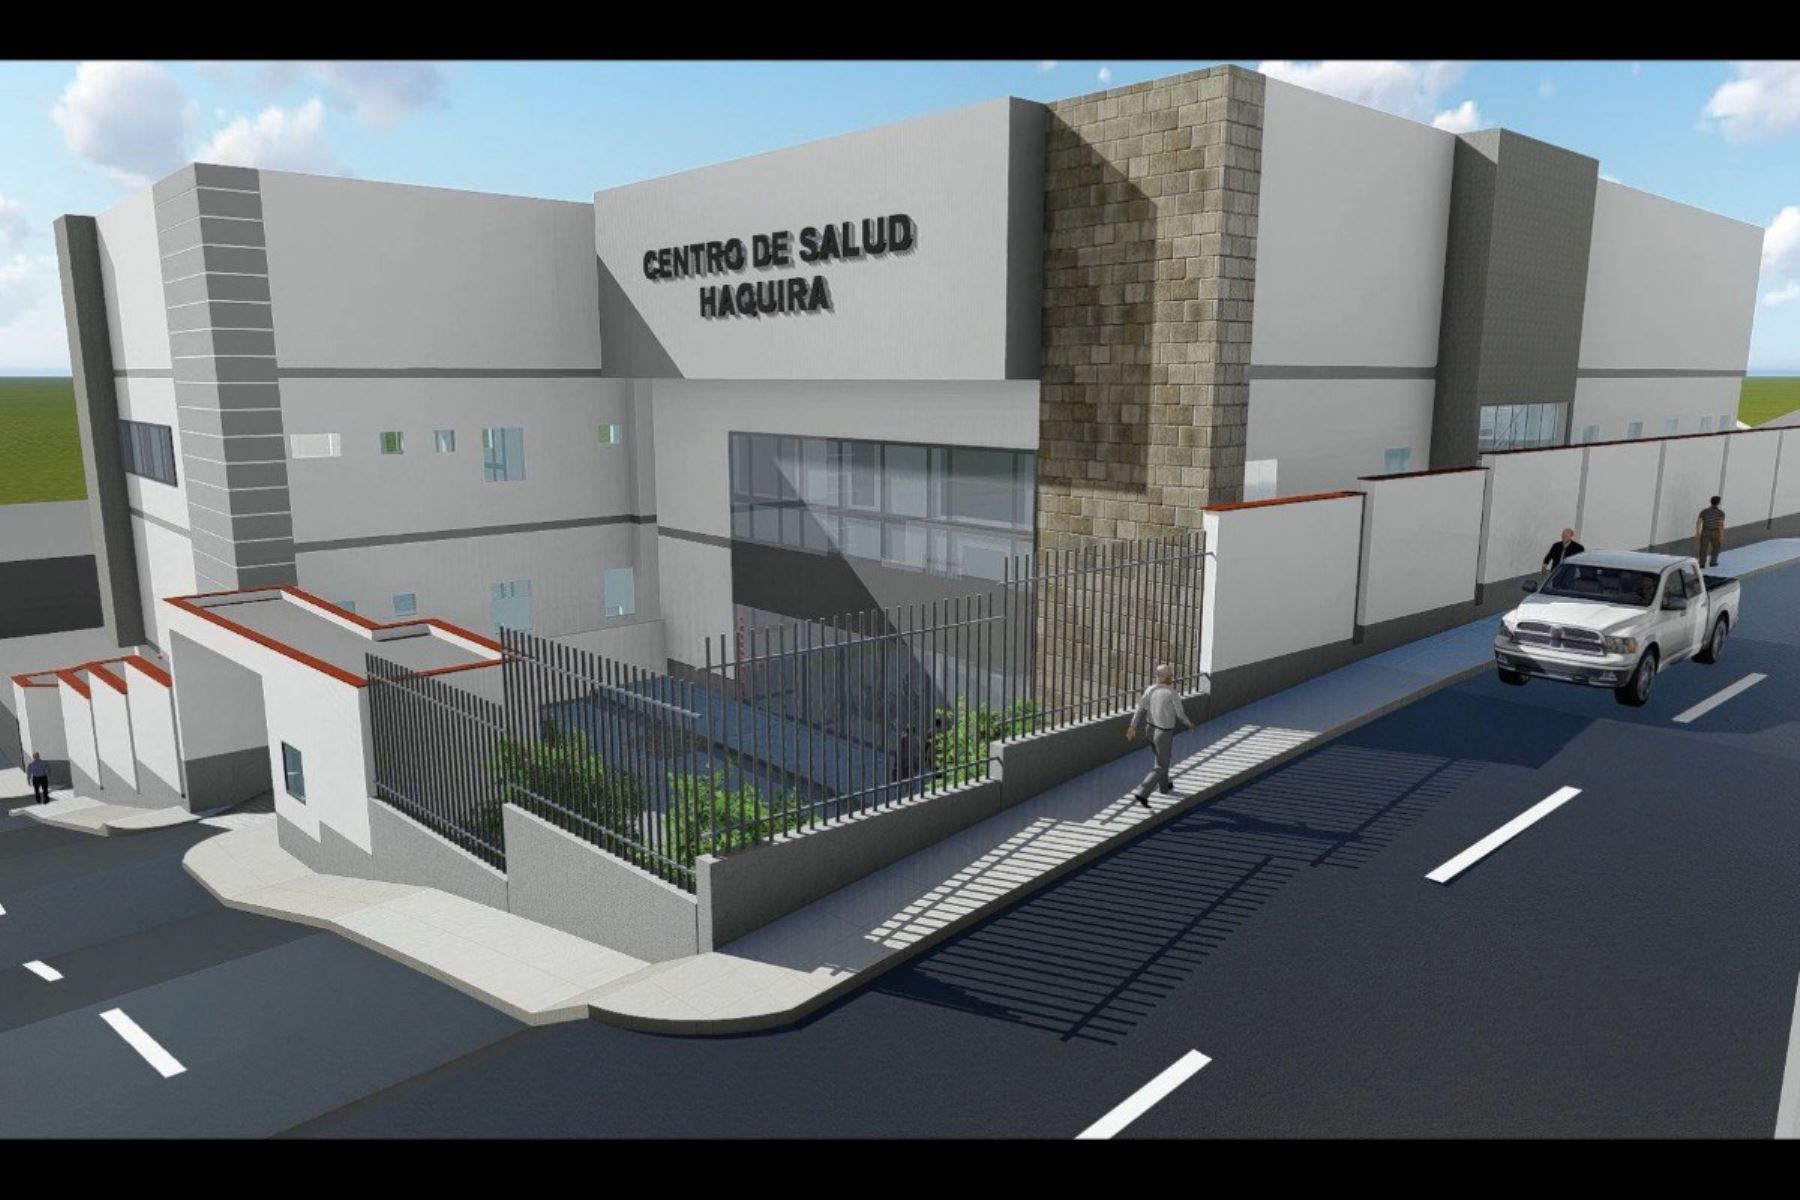 Minsa inicia la construcción del nuevo centro de salud en Haquira, ubicado en la provincia de Cotabambas, región Apurímac. ANDINA/Difusión